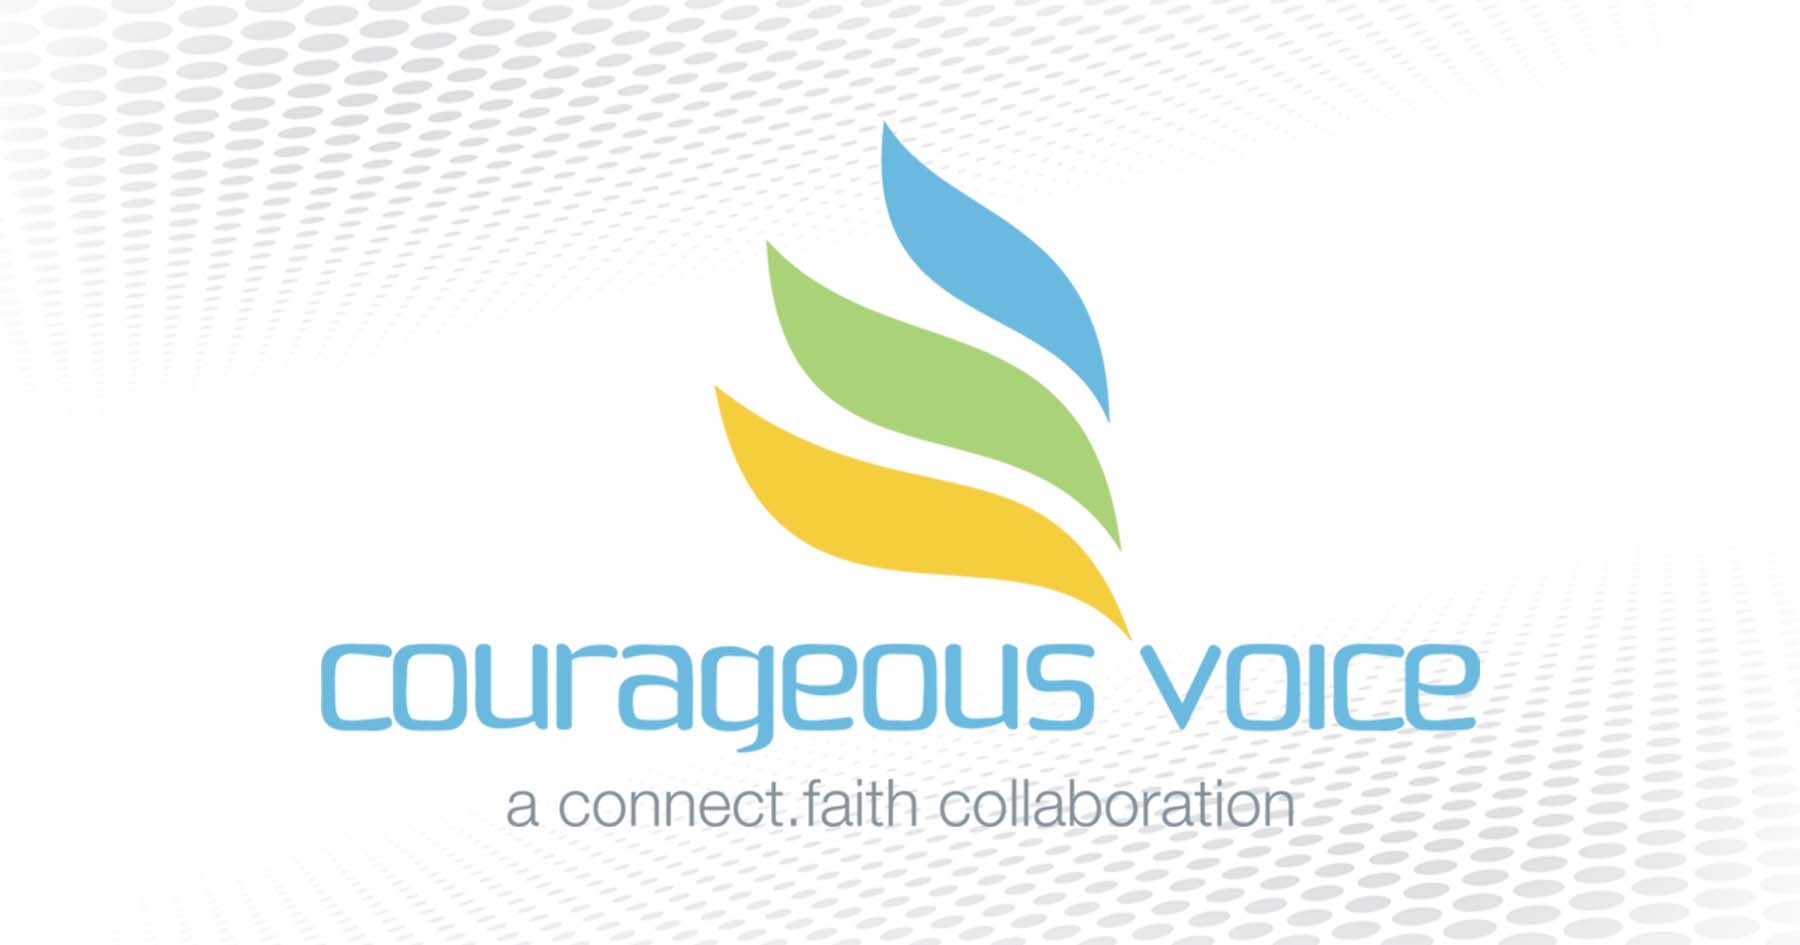 Salem Islas Madlo | “Courageous Voice” | connect.faith